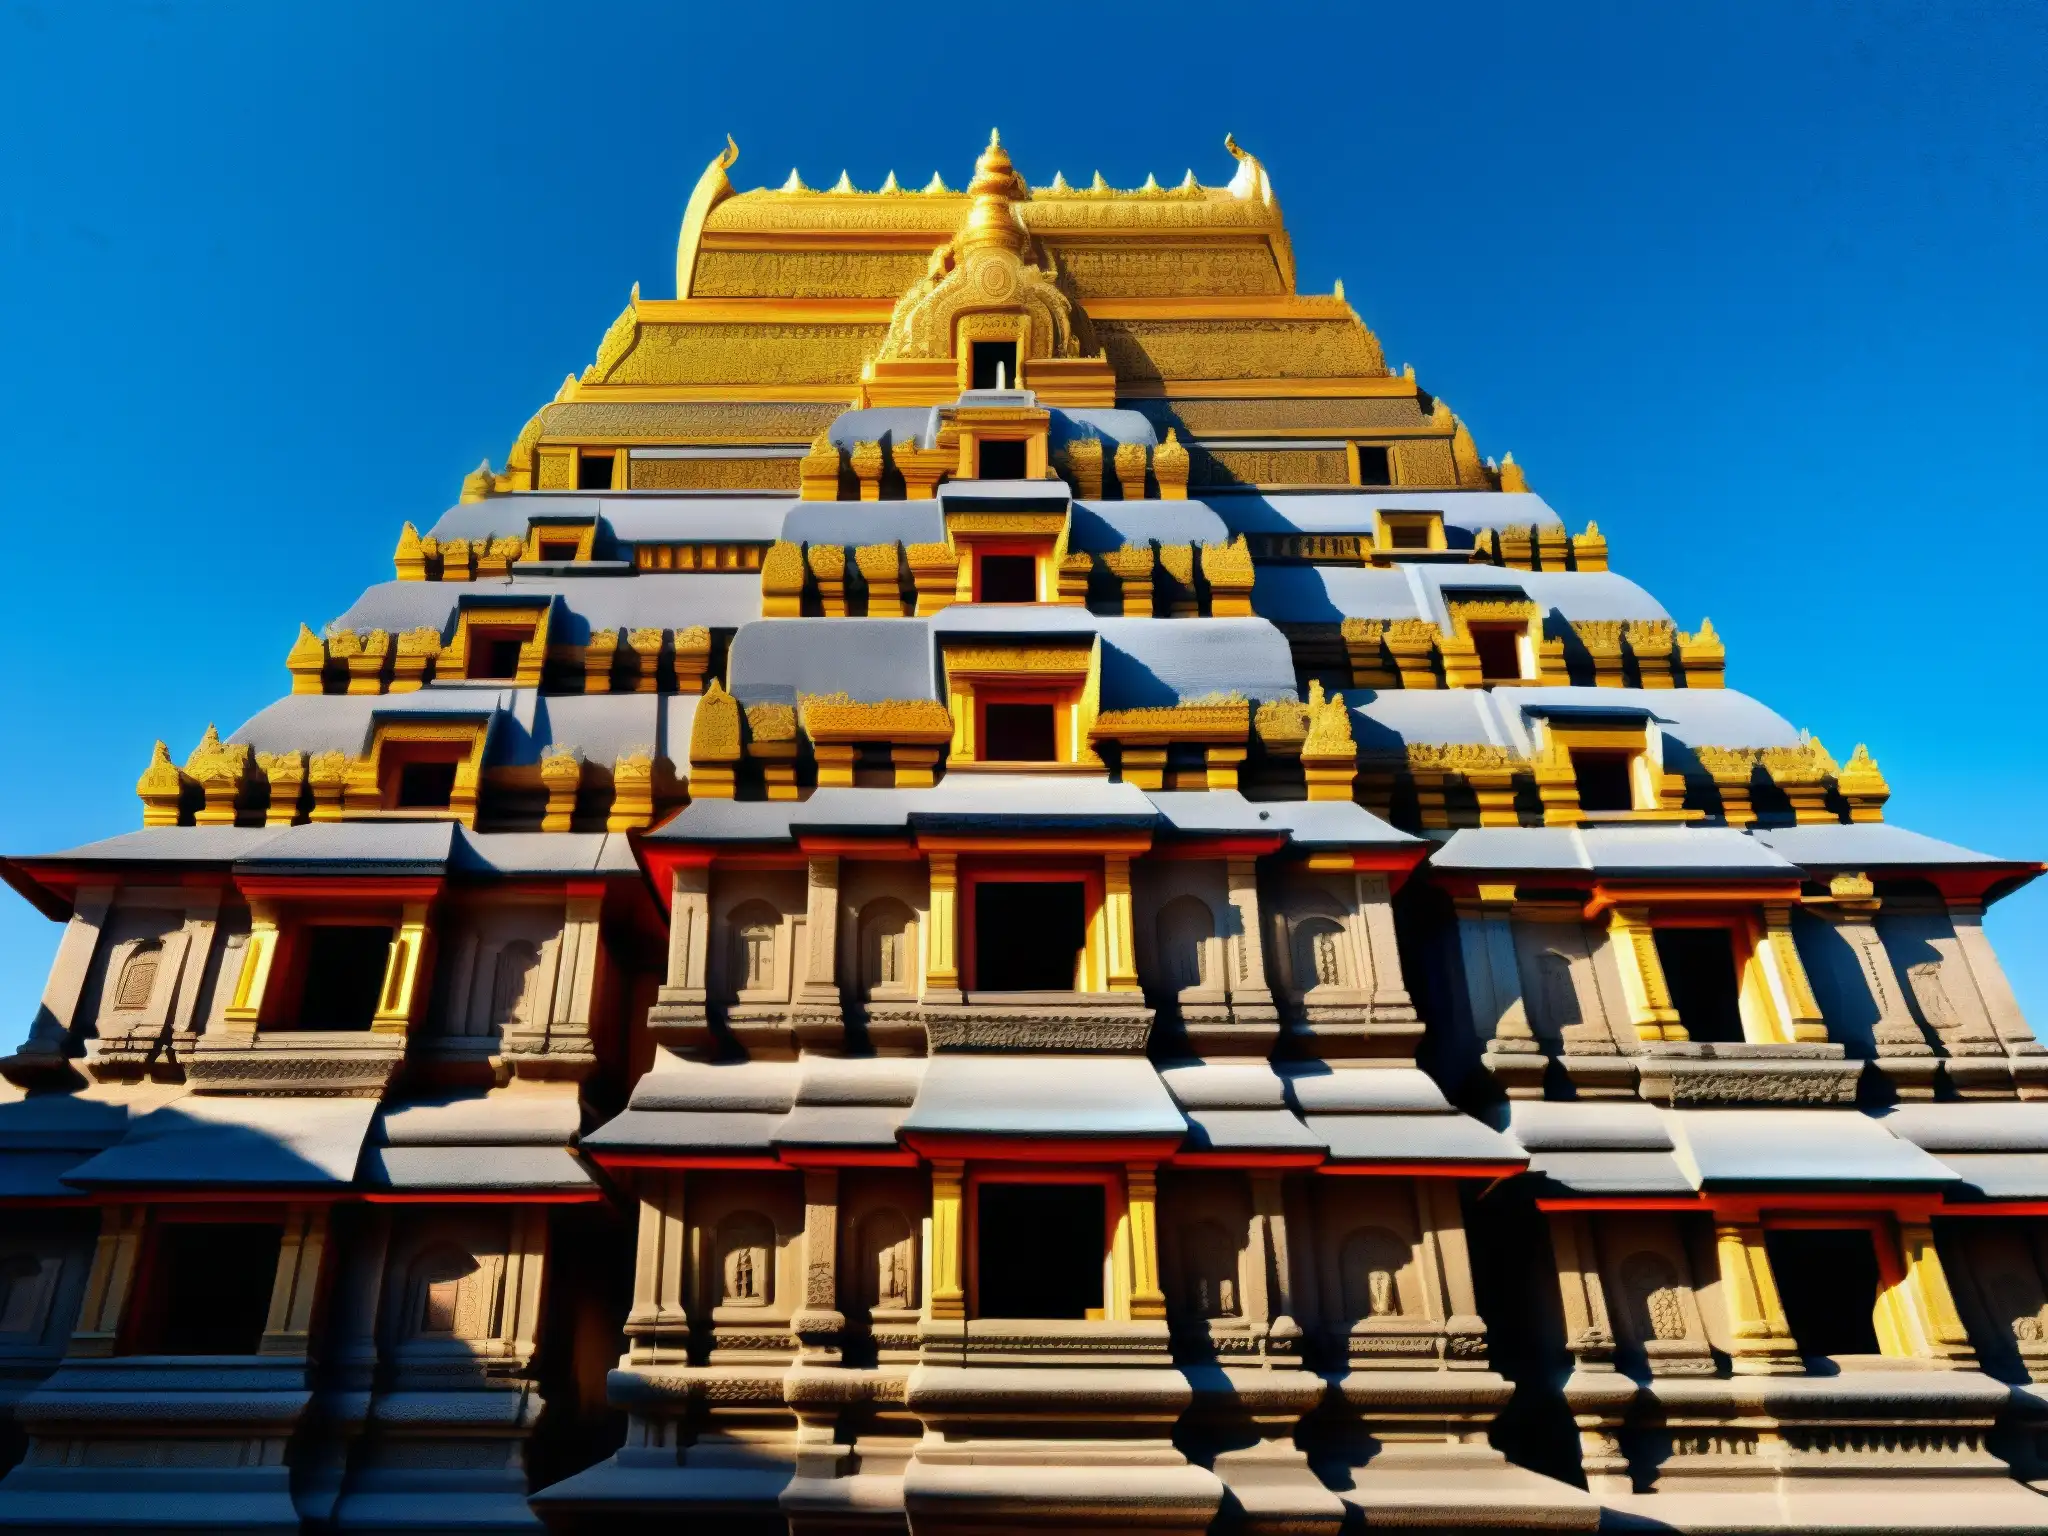 Imagen del templo antiguo de Chinnamasta con detallados grabados y diseño único, bajo un cielo azul